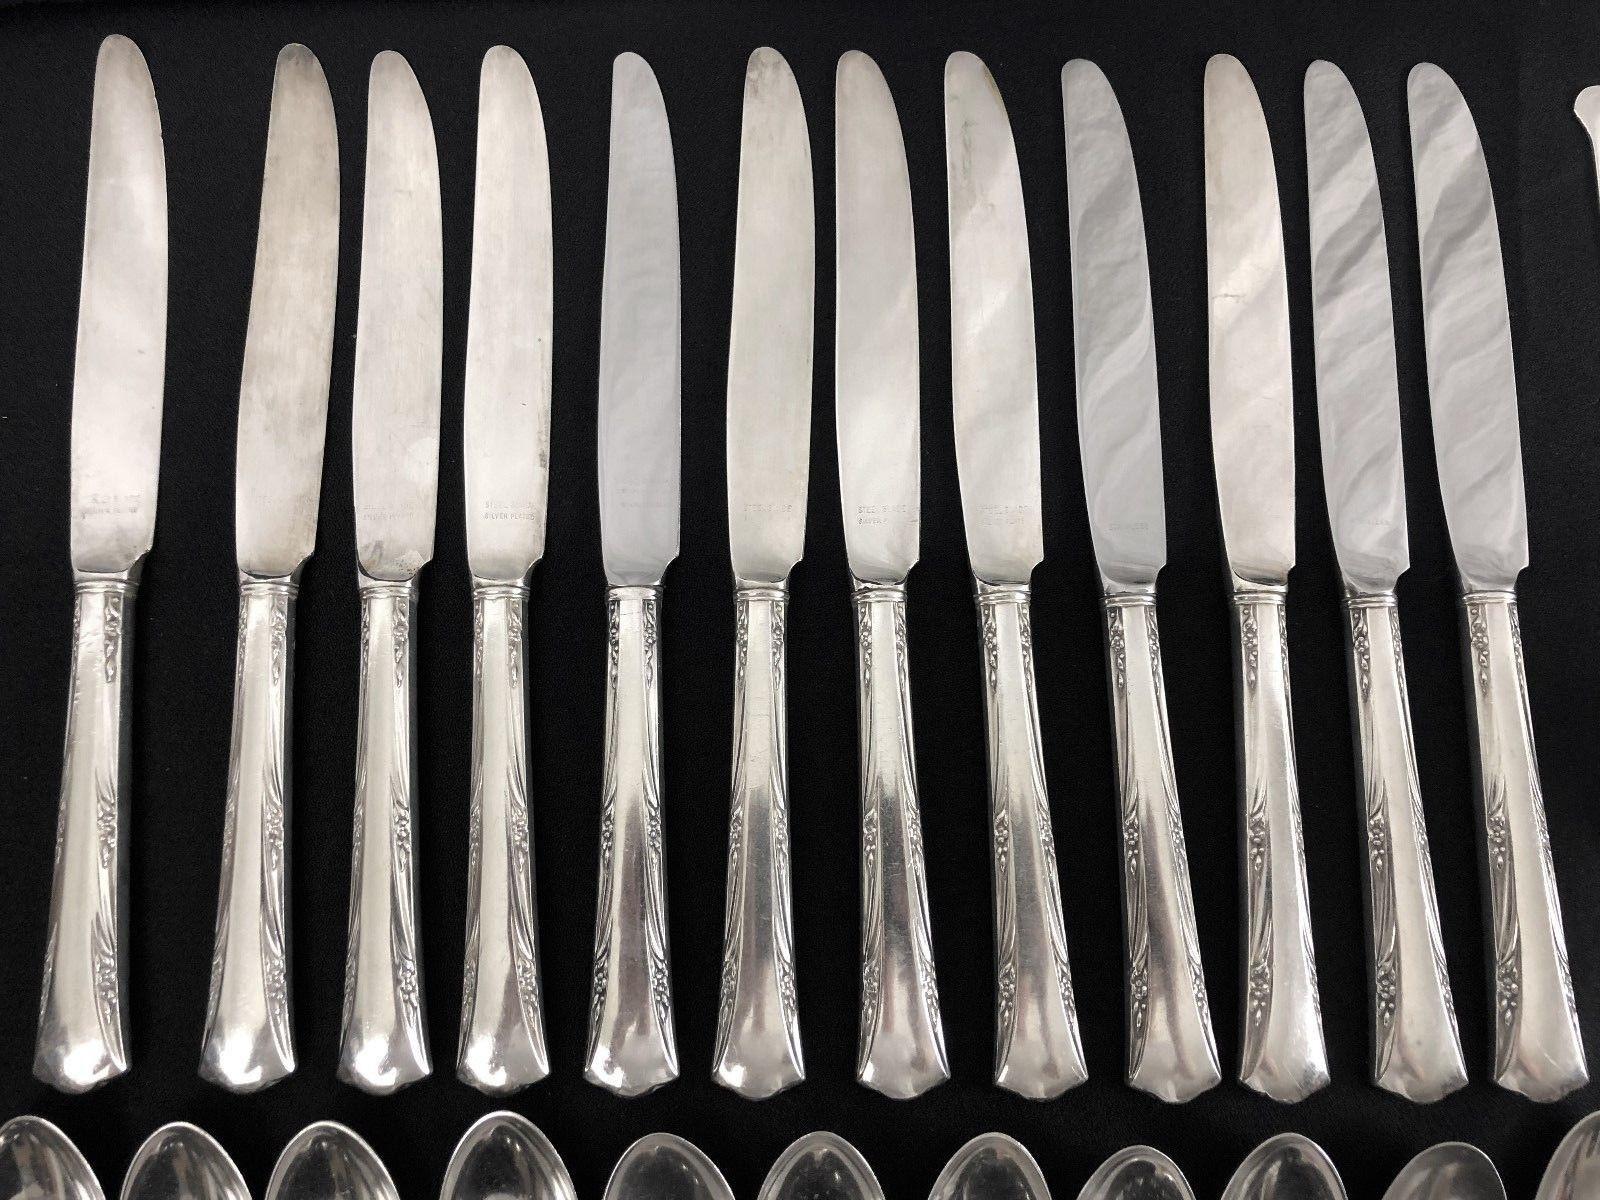 Gorham Greenbrier service for 12, sterling silver, 1938, no monogram 

12 dinner forks - 7 1/4